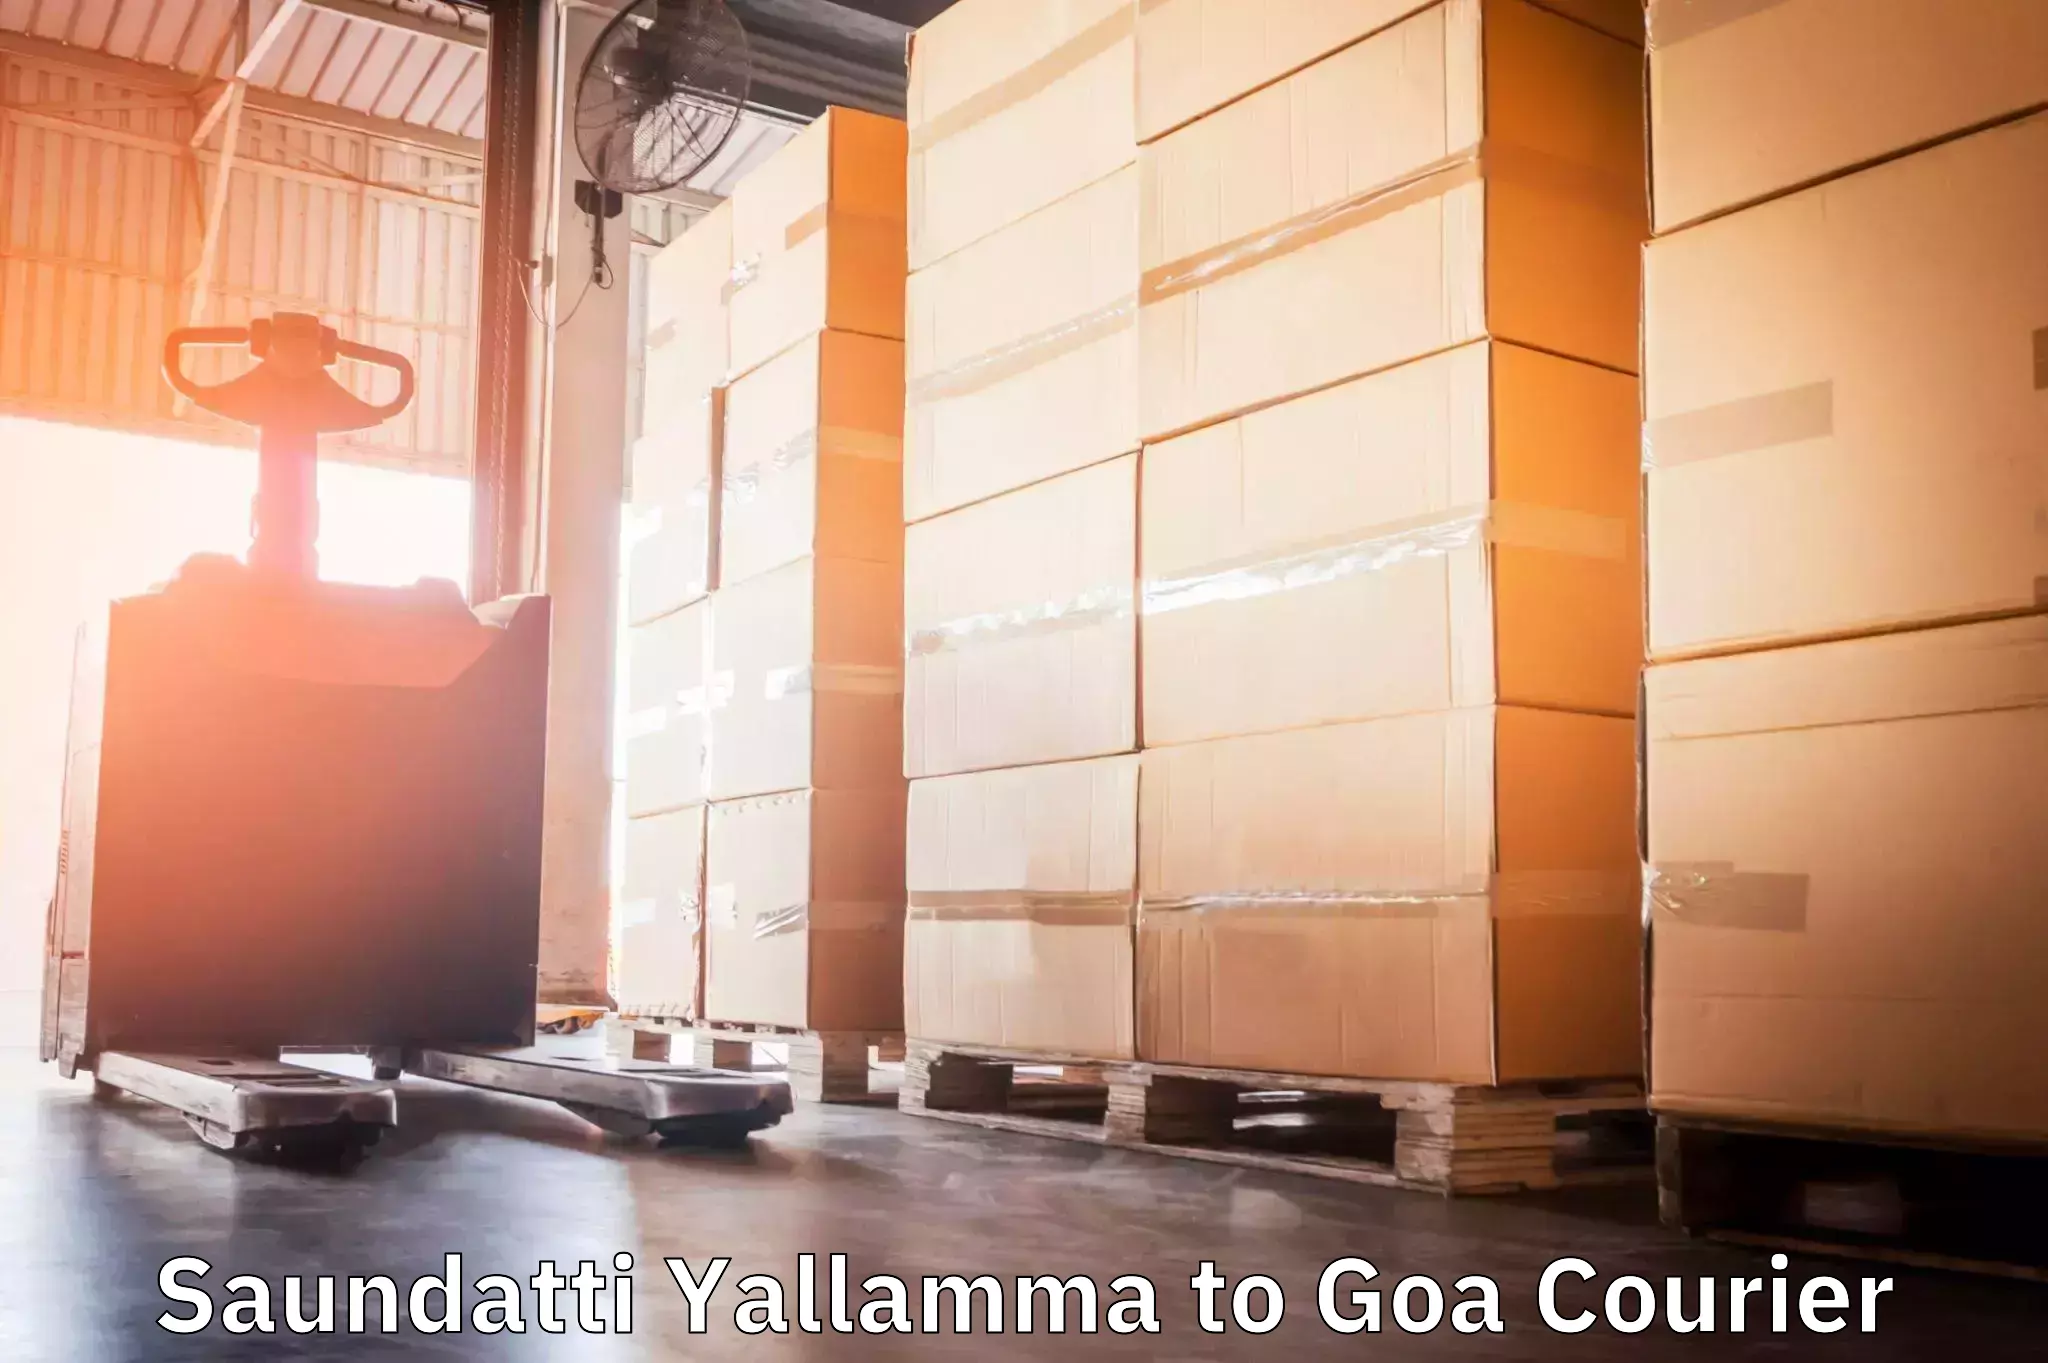 Courier rate comparison Saundatti Yallamma to Goa University